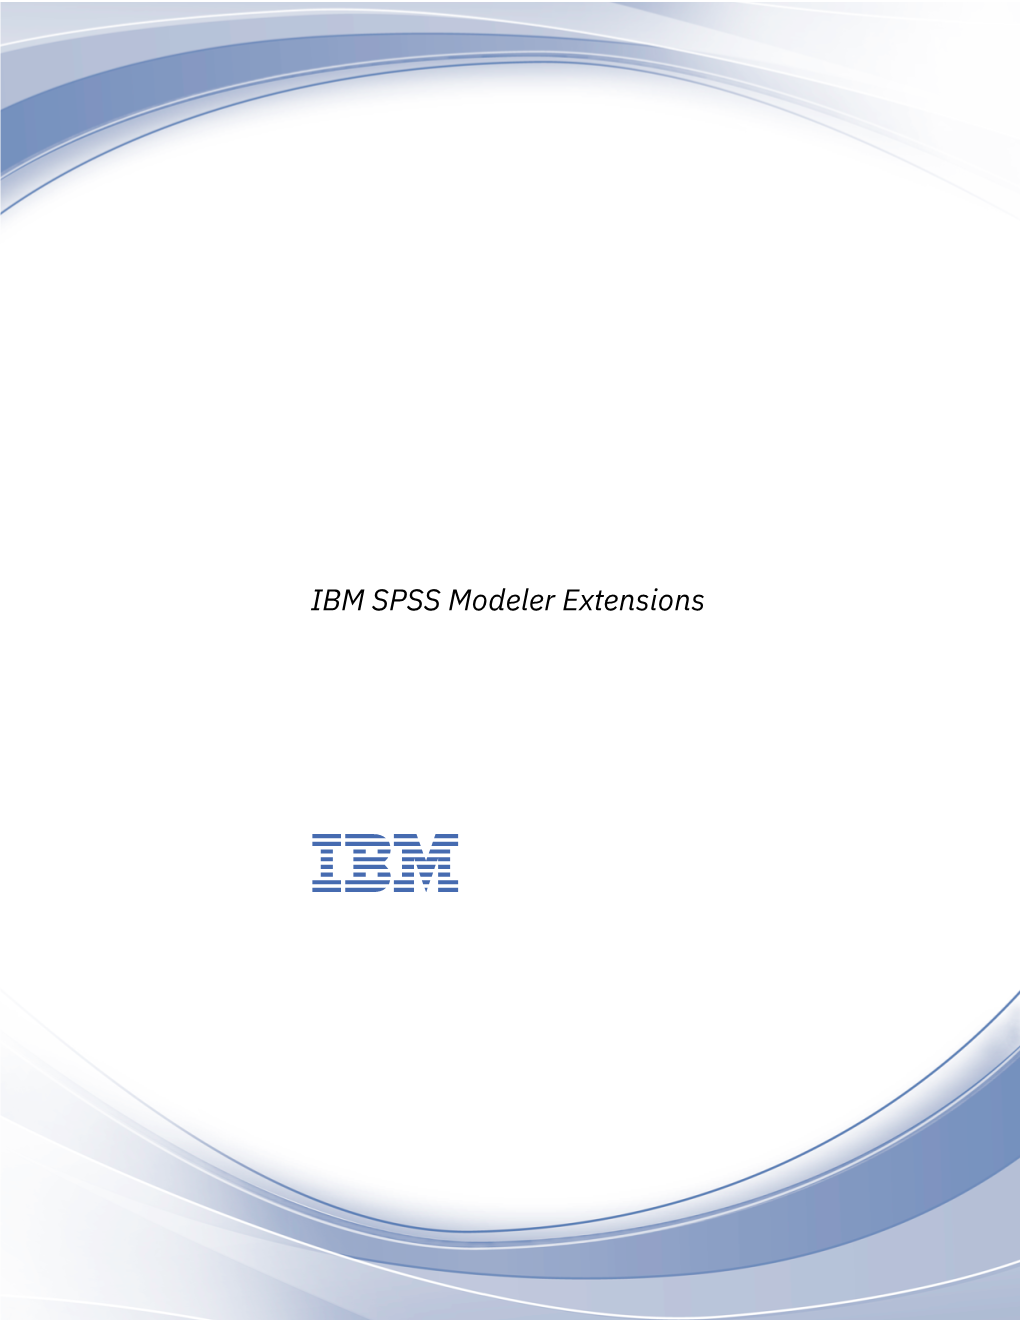 IBM SPSS Modeler Extensions